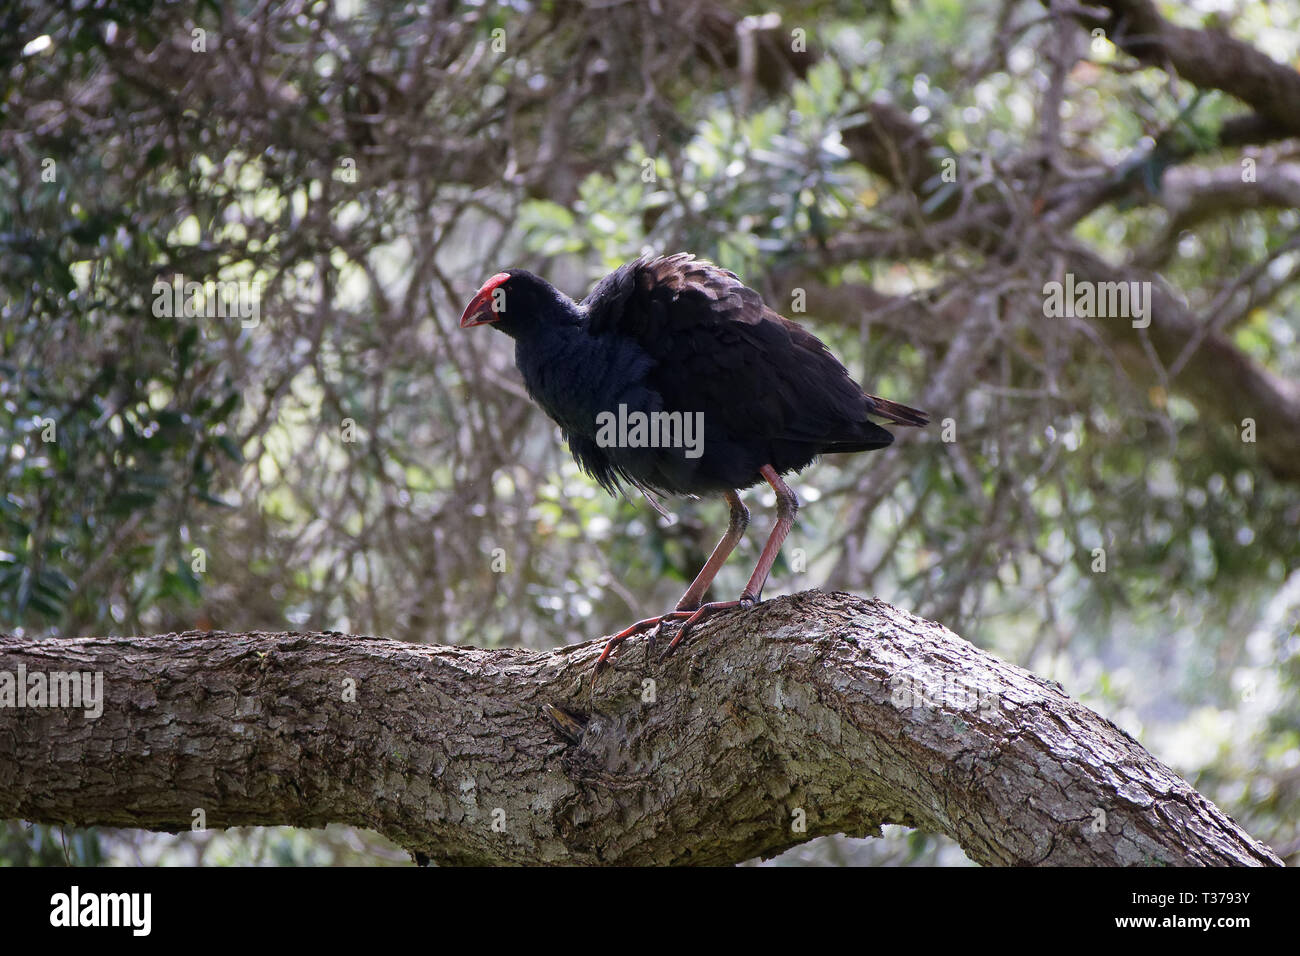 Fluffed up large adult Pukeko up a tree. New Zealand. Stock Photo